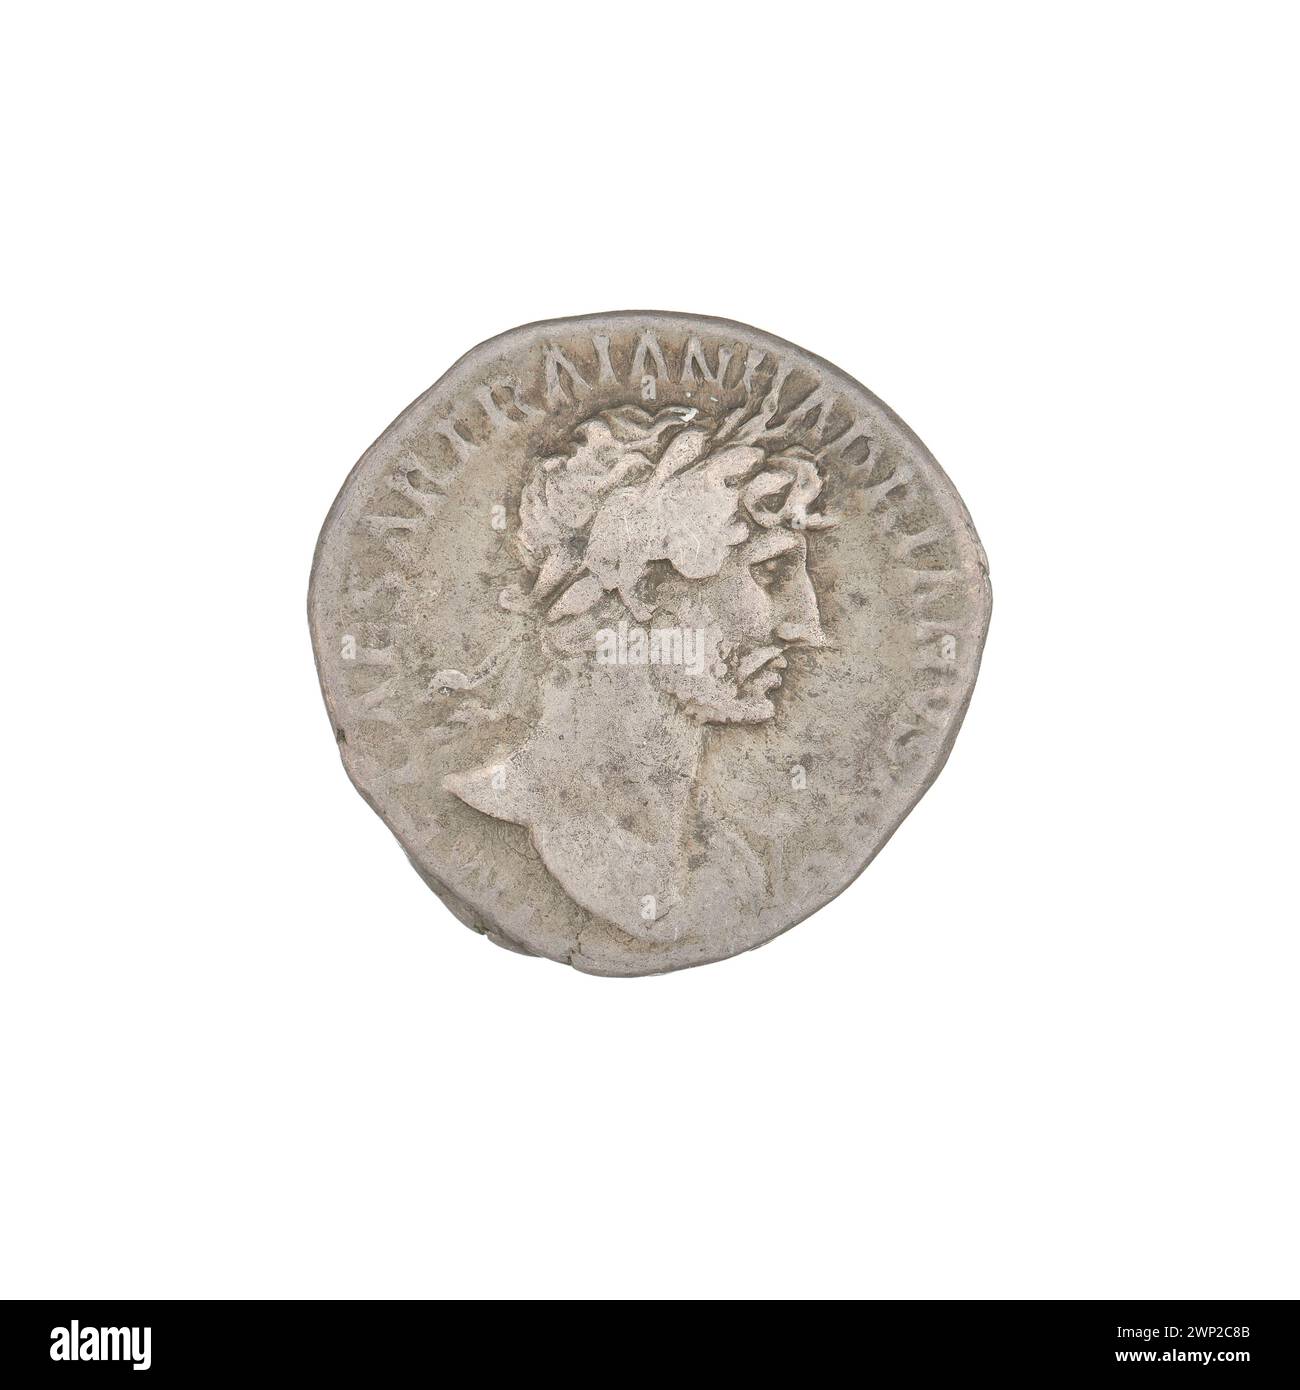 denarius; Hadrian (76-138; Roman emperor 117-138); 118 (118-00-00-118-00-00);Salus (Personification), Patery, Busters, Bay Wreaths Stock Photo